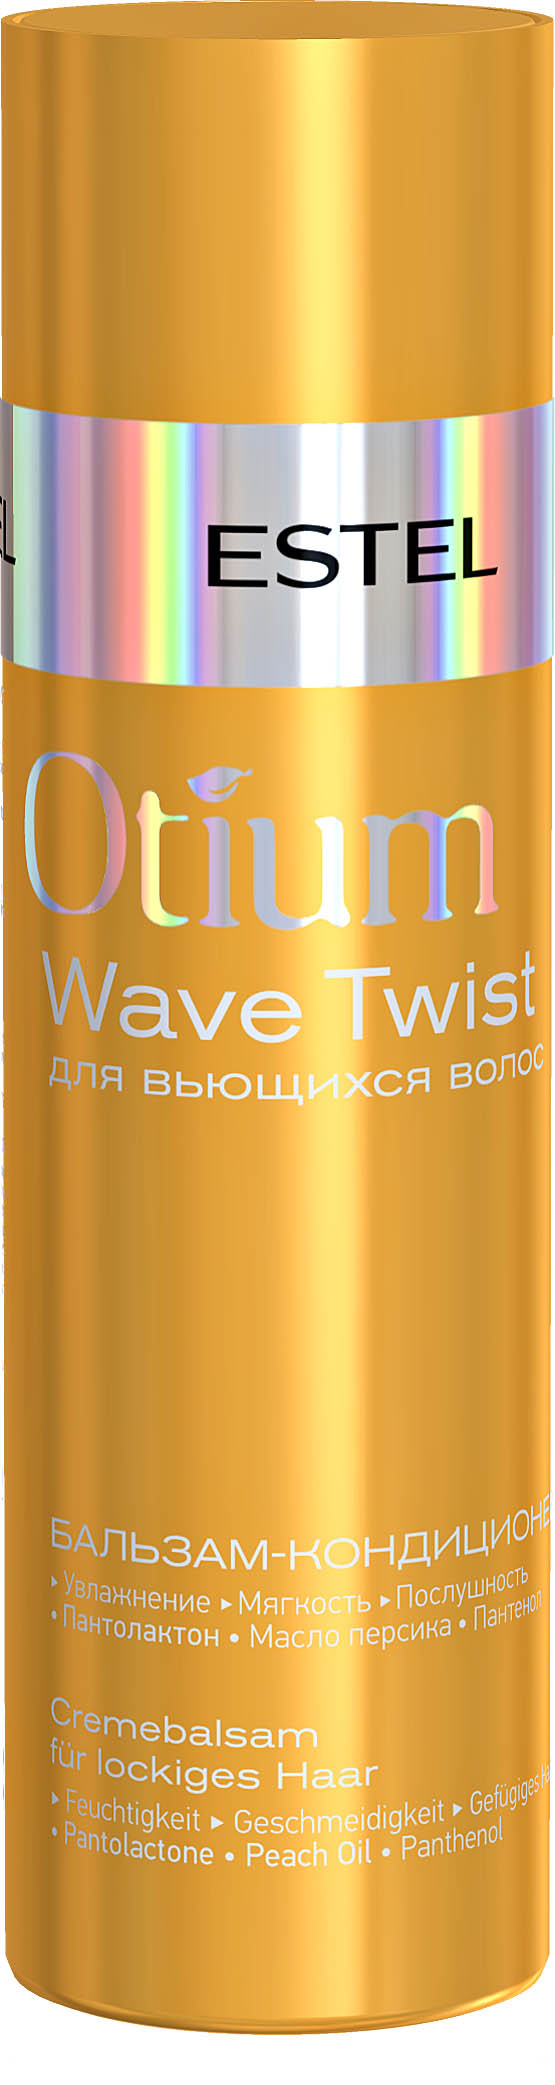 Бальзам-кондиционер для вьющихся волос OTIUM WAVE TWIST, 200 мл